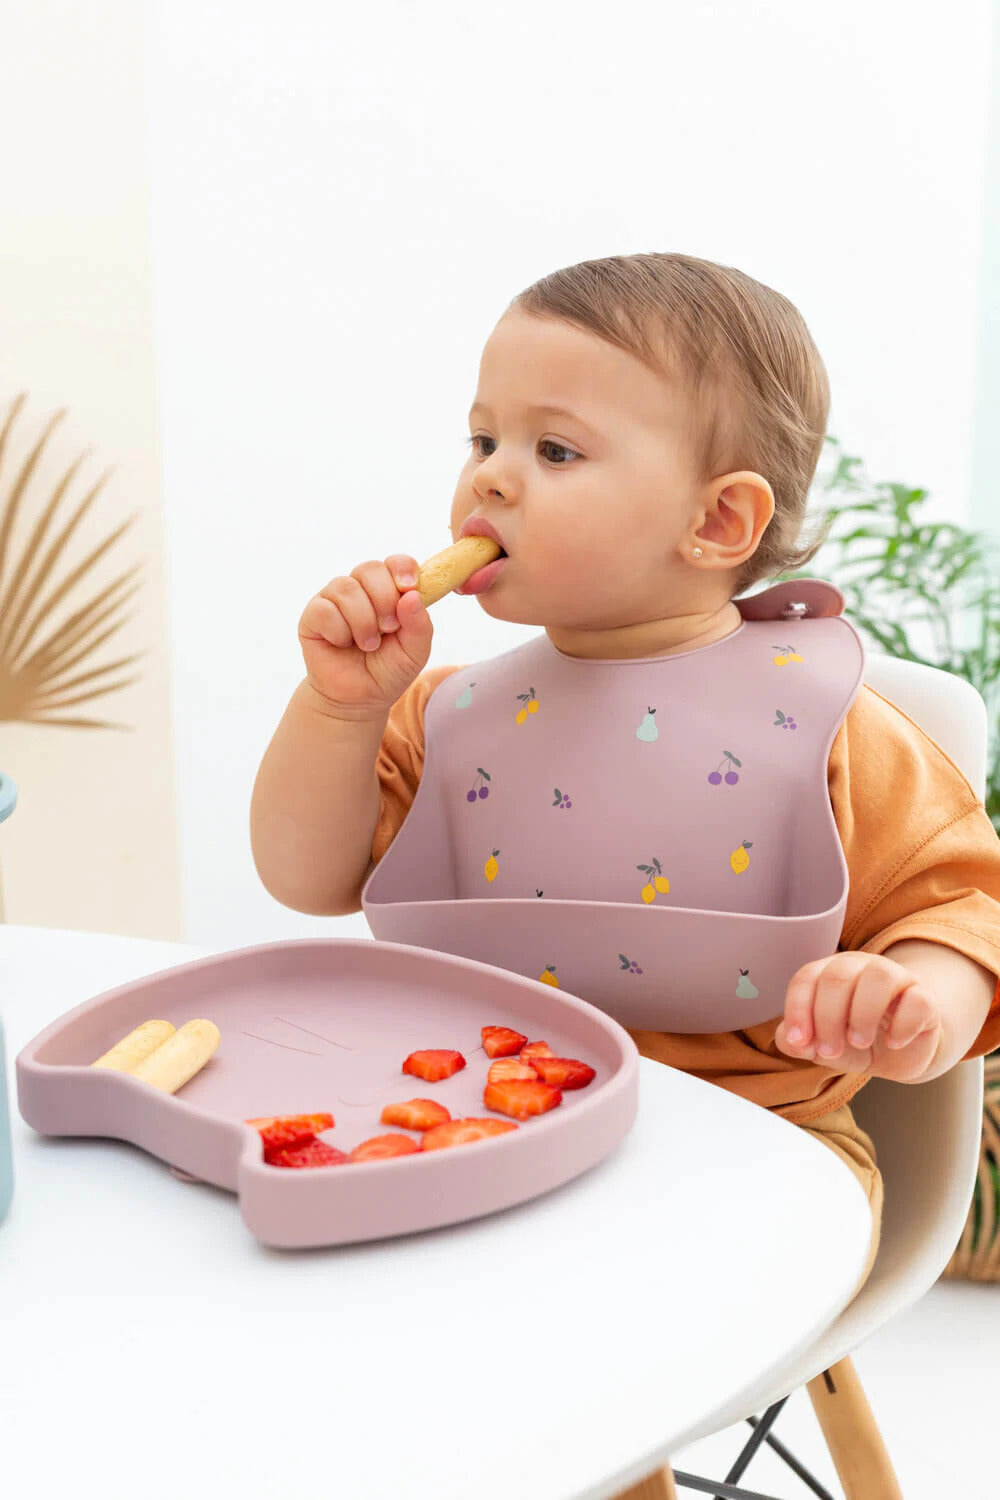 Vaiselle repas bébé en silicone CottonCloud disponible sur Babykare.fr